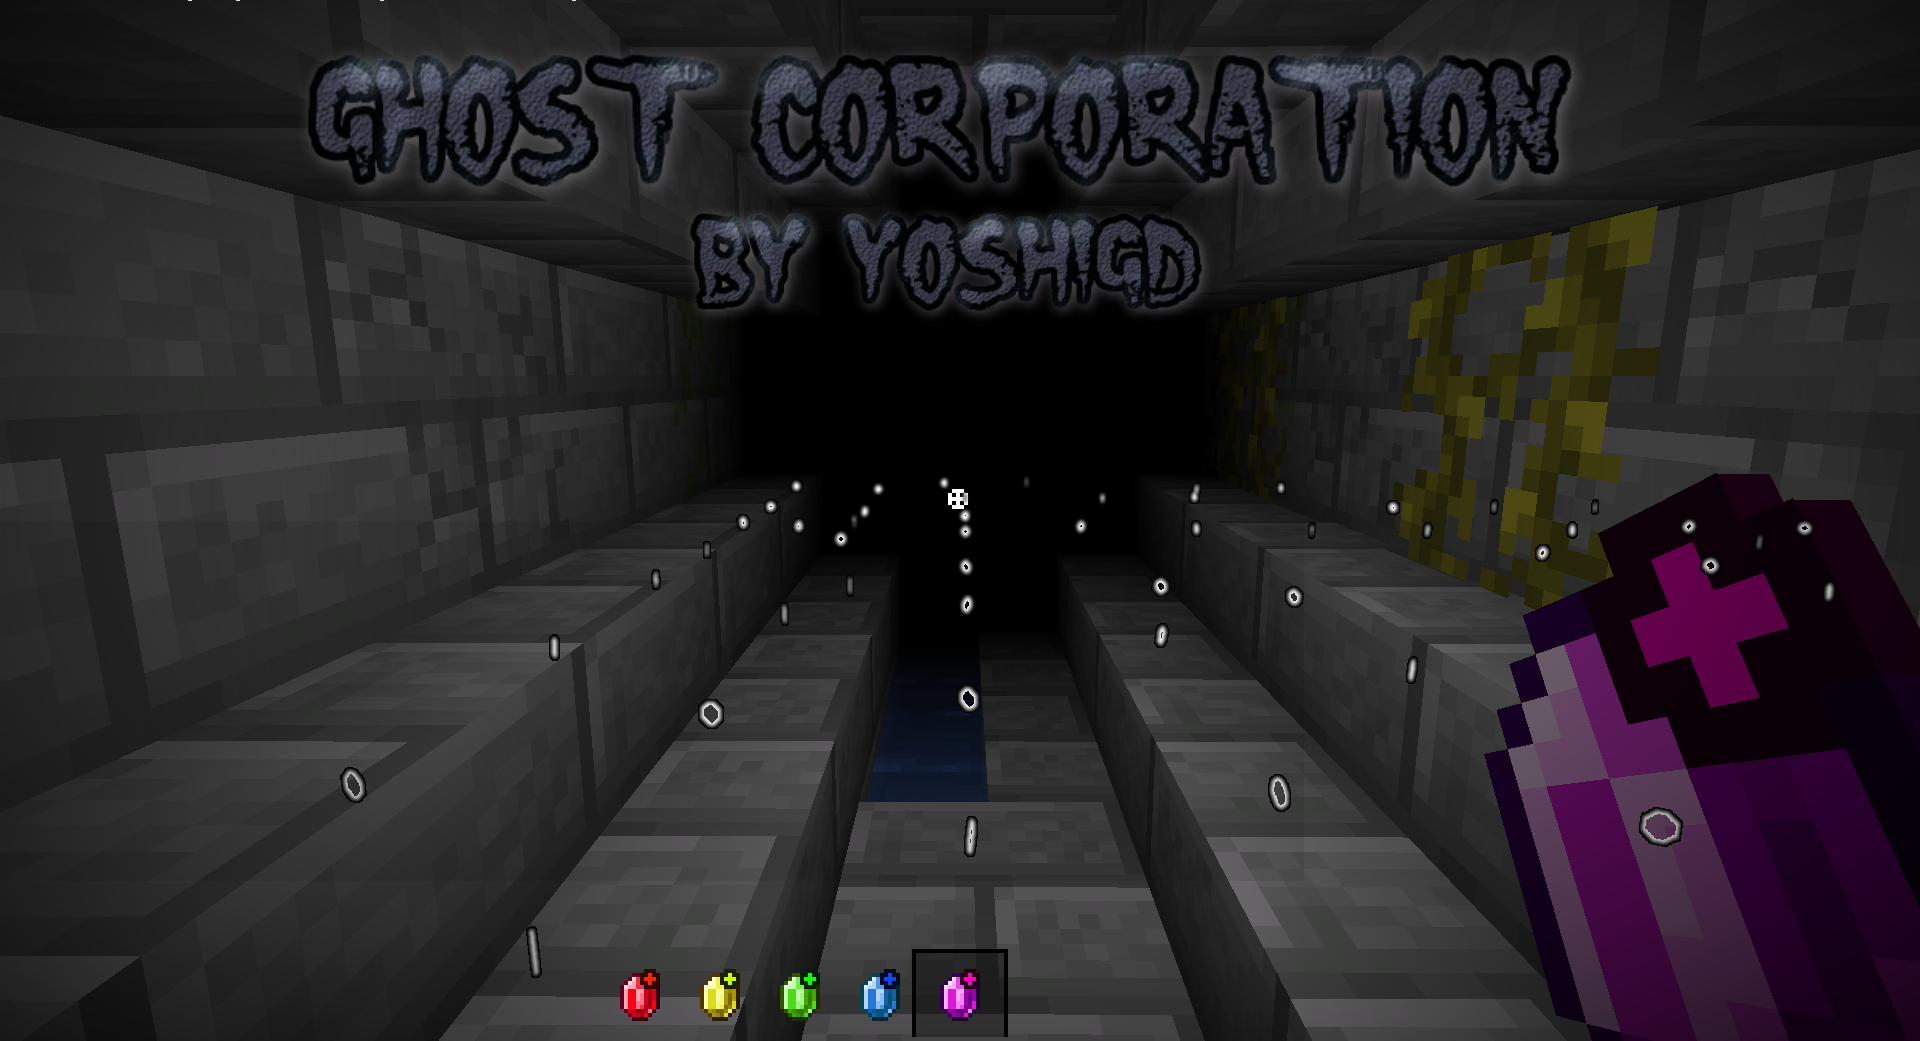 Télécharger Ghost Corporation pour Minecraft 1.14.2